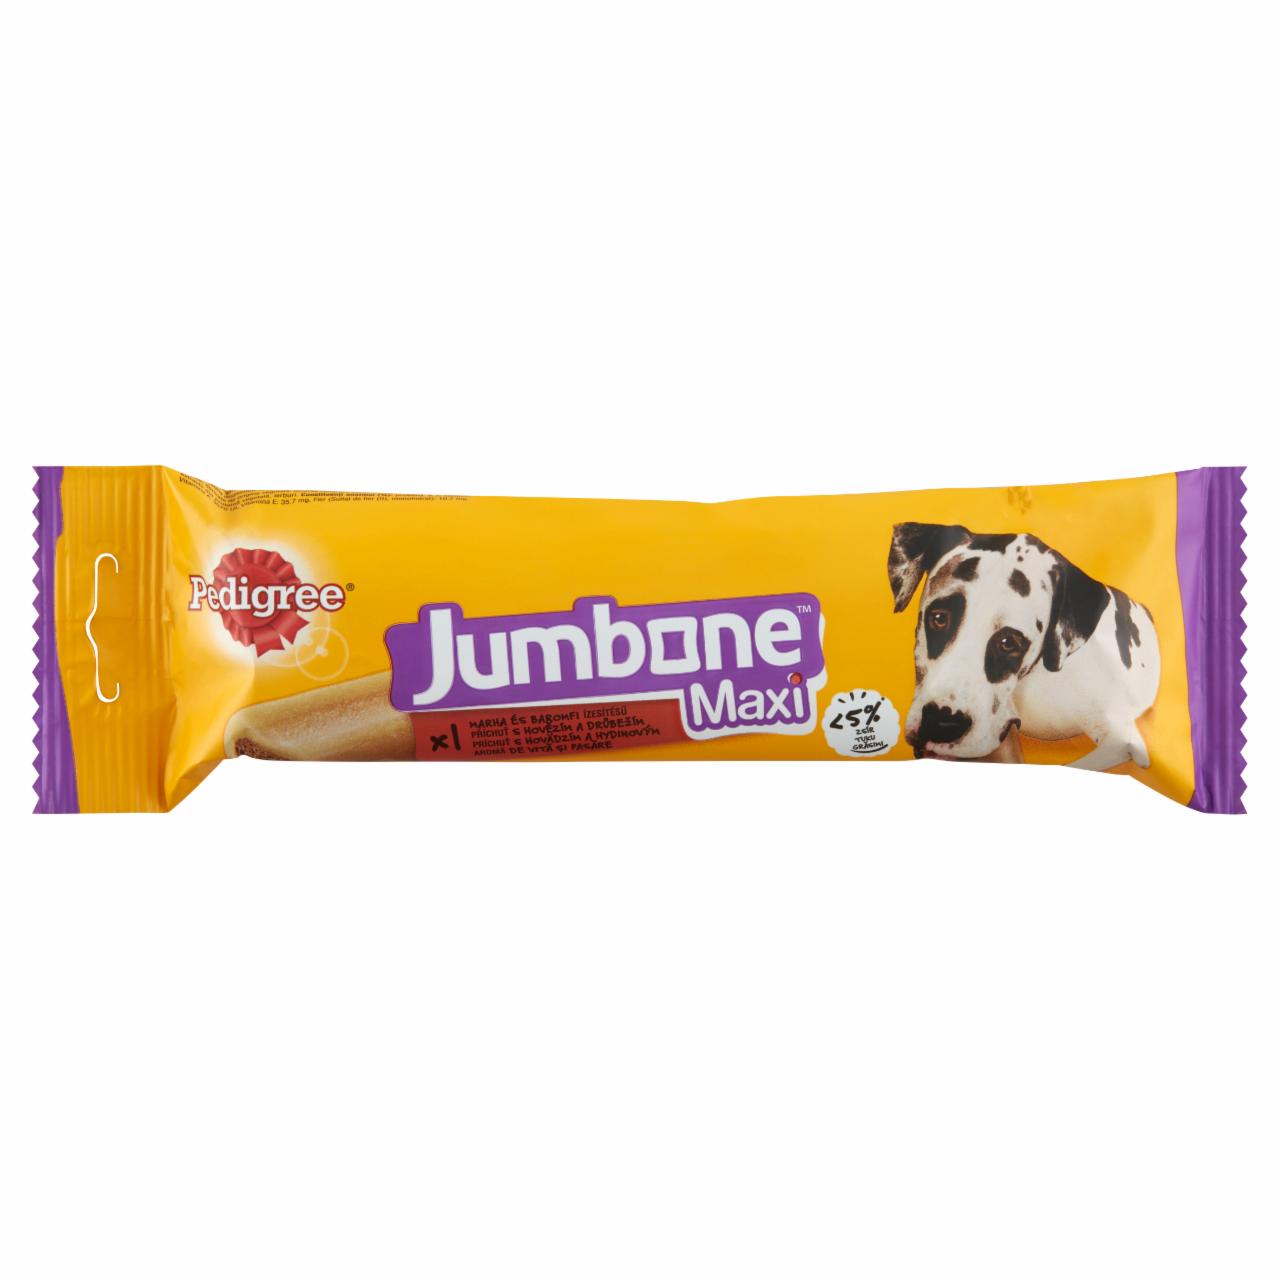 Képek - Pedigree Jumbone Maxi marha és baromfi ízesítésű kiegészítő állateledel felnőtt kutyák számára 180 g